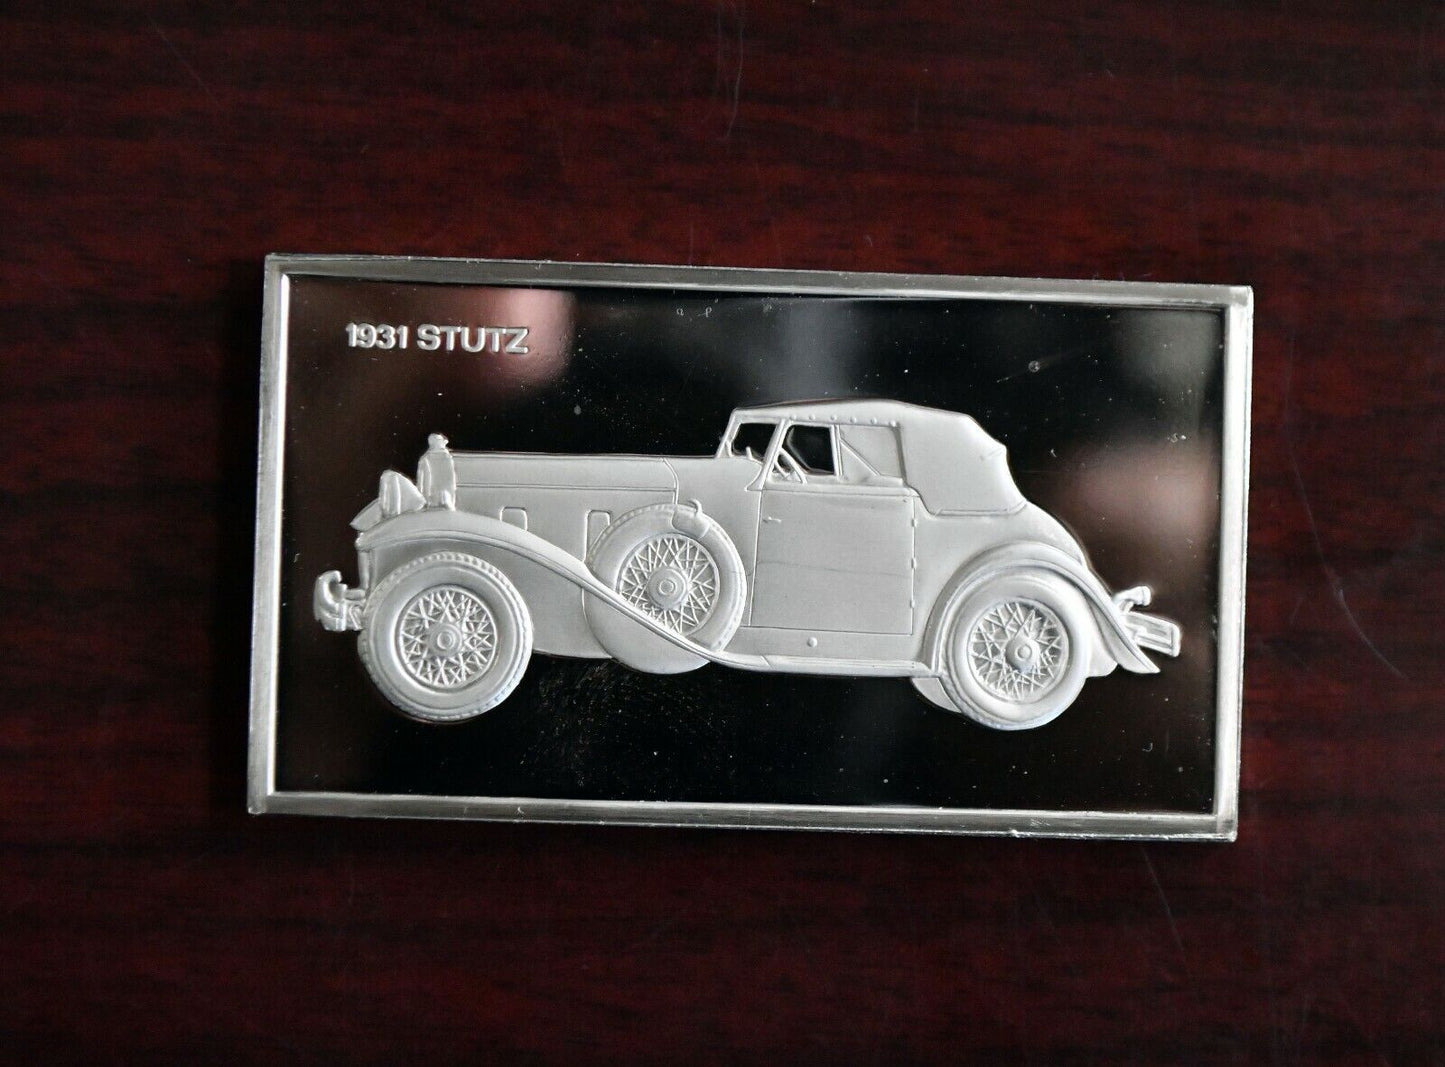 1931 Stutz Centennial Car Ingot Collection 1000 Grains Sterling Franklin Mint